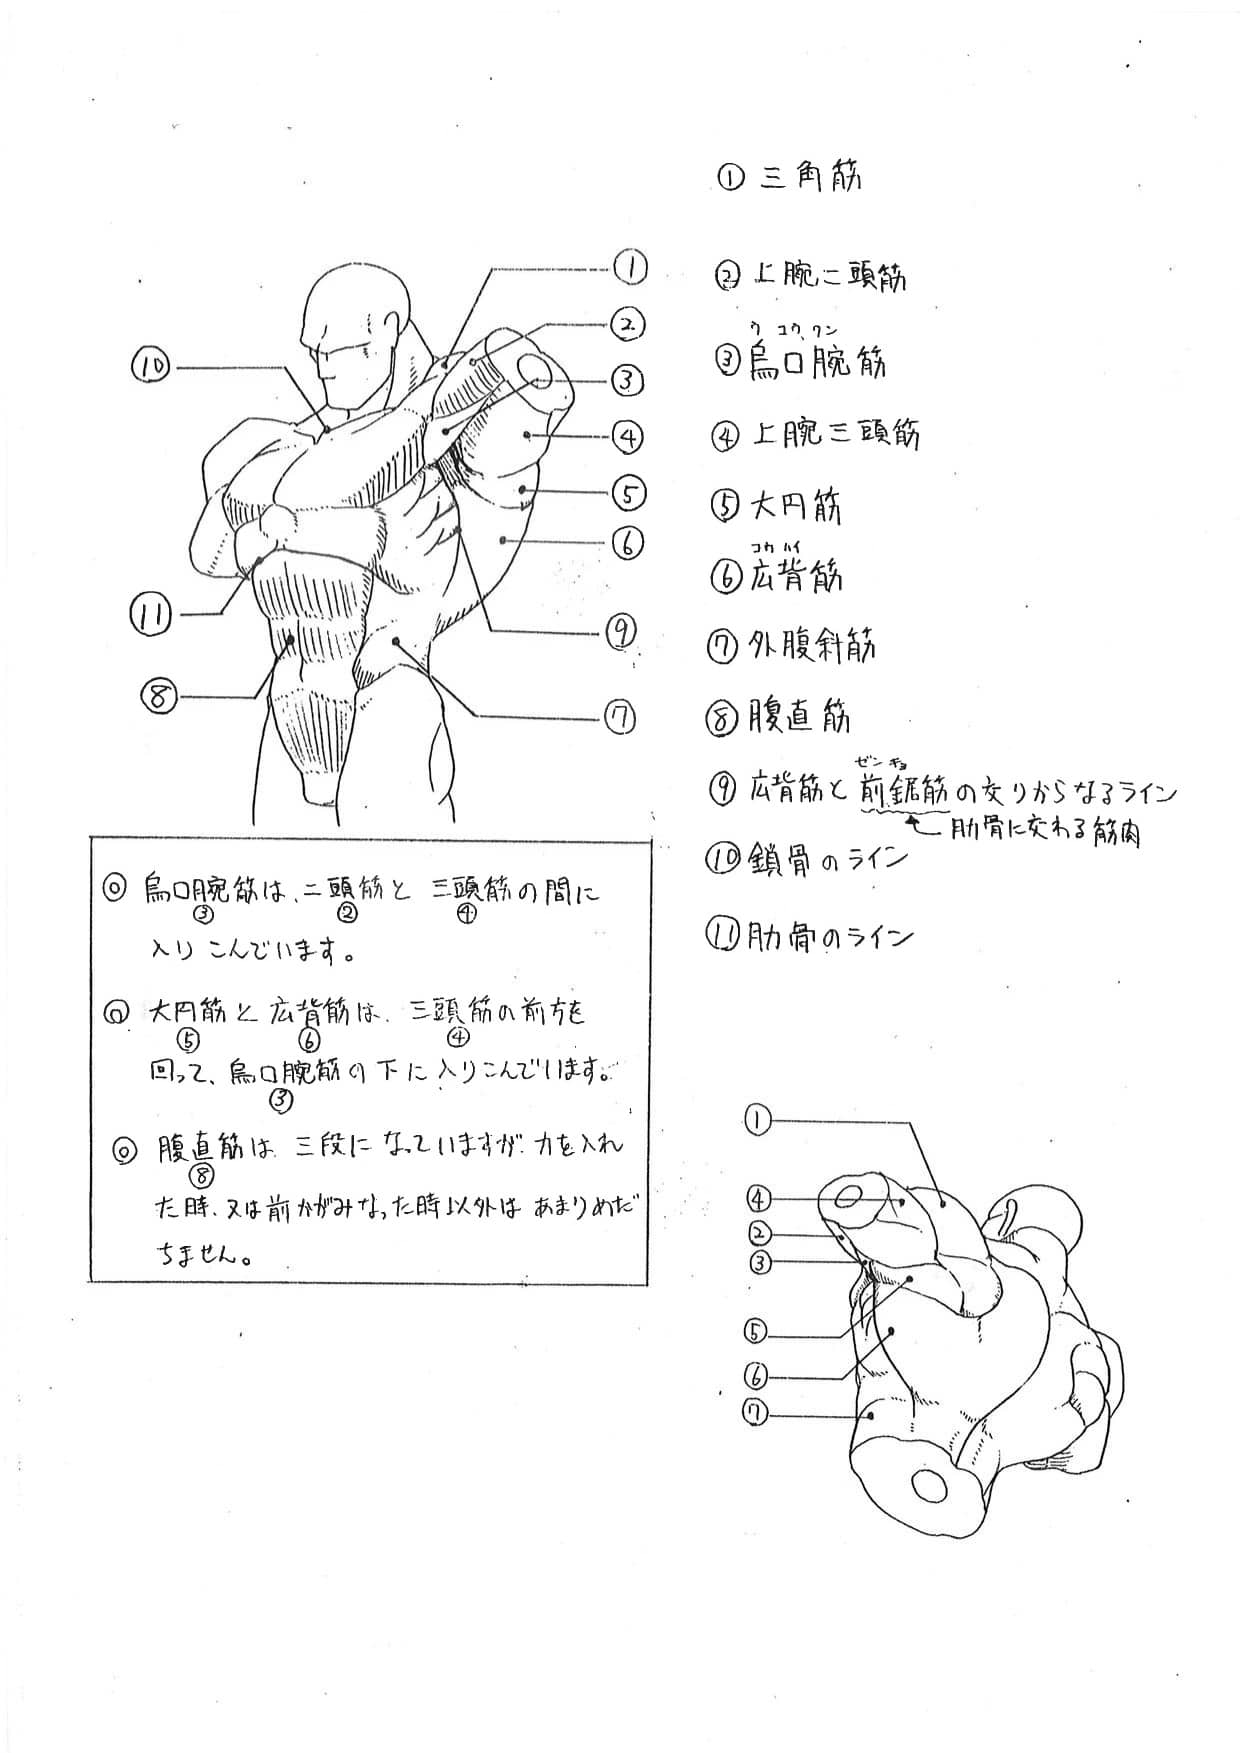 Chequea esta guía anatómica de Capcom para sus juegos